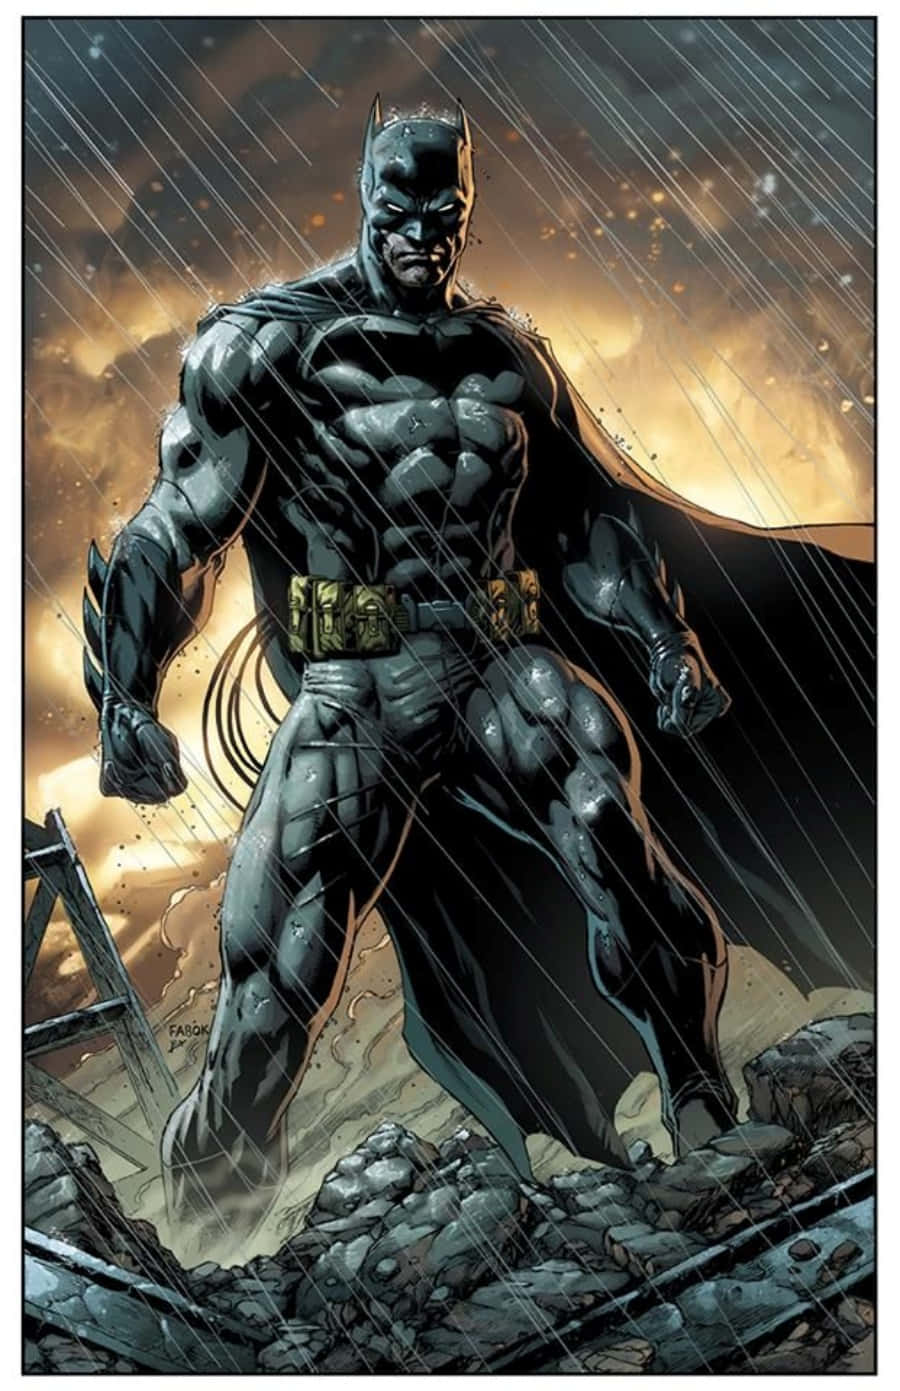 Imagende Batman En Un Cómic, Con Fuego Y Lluvia.